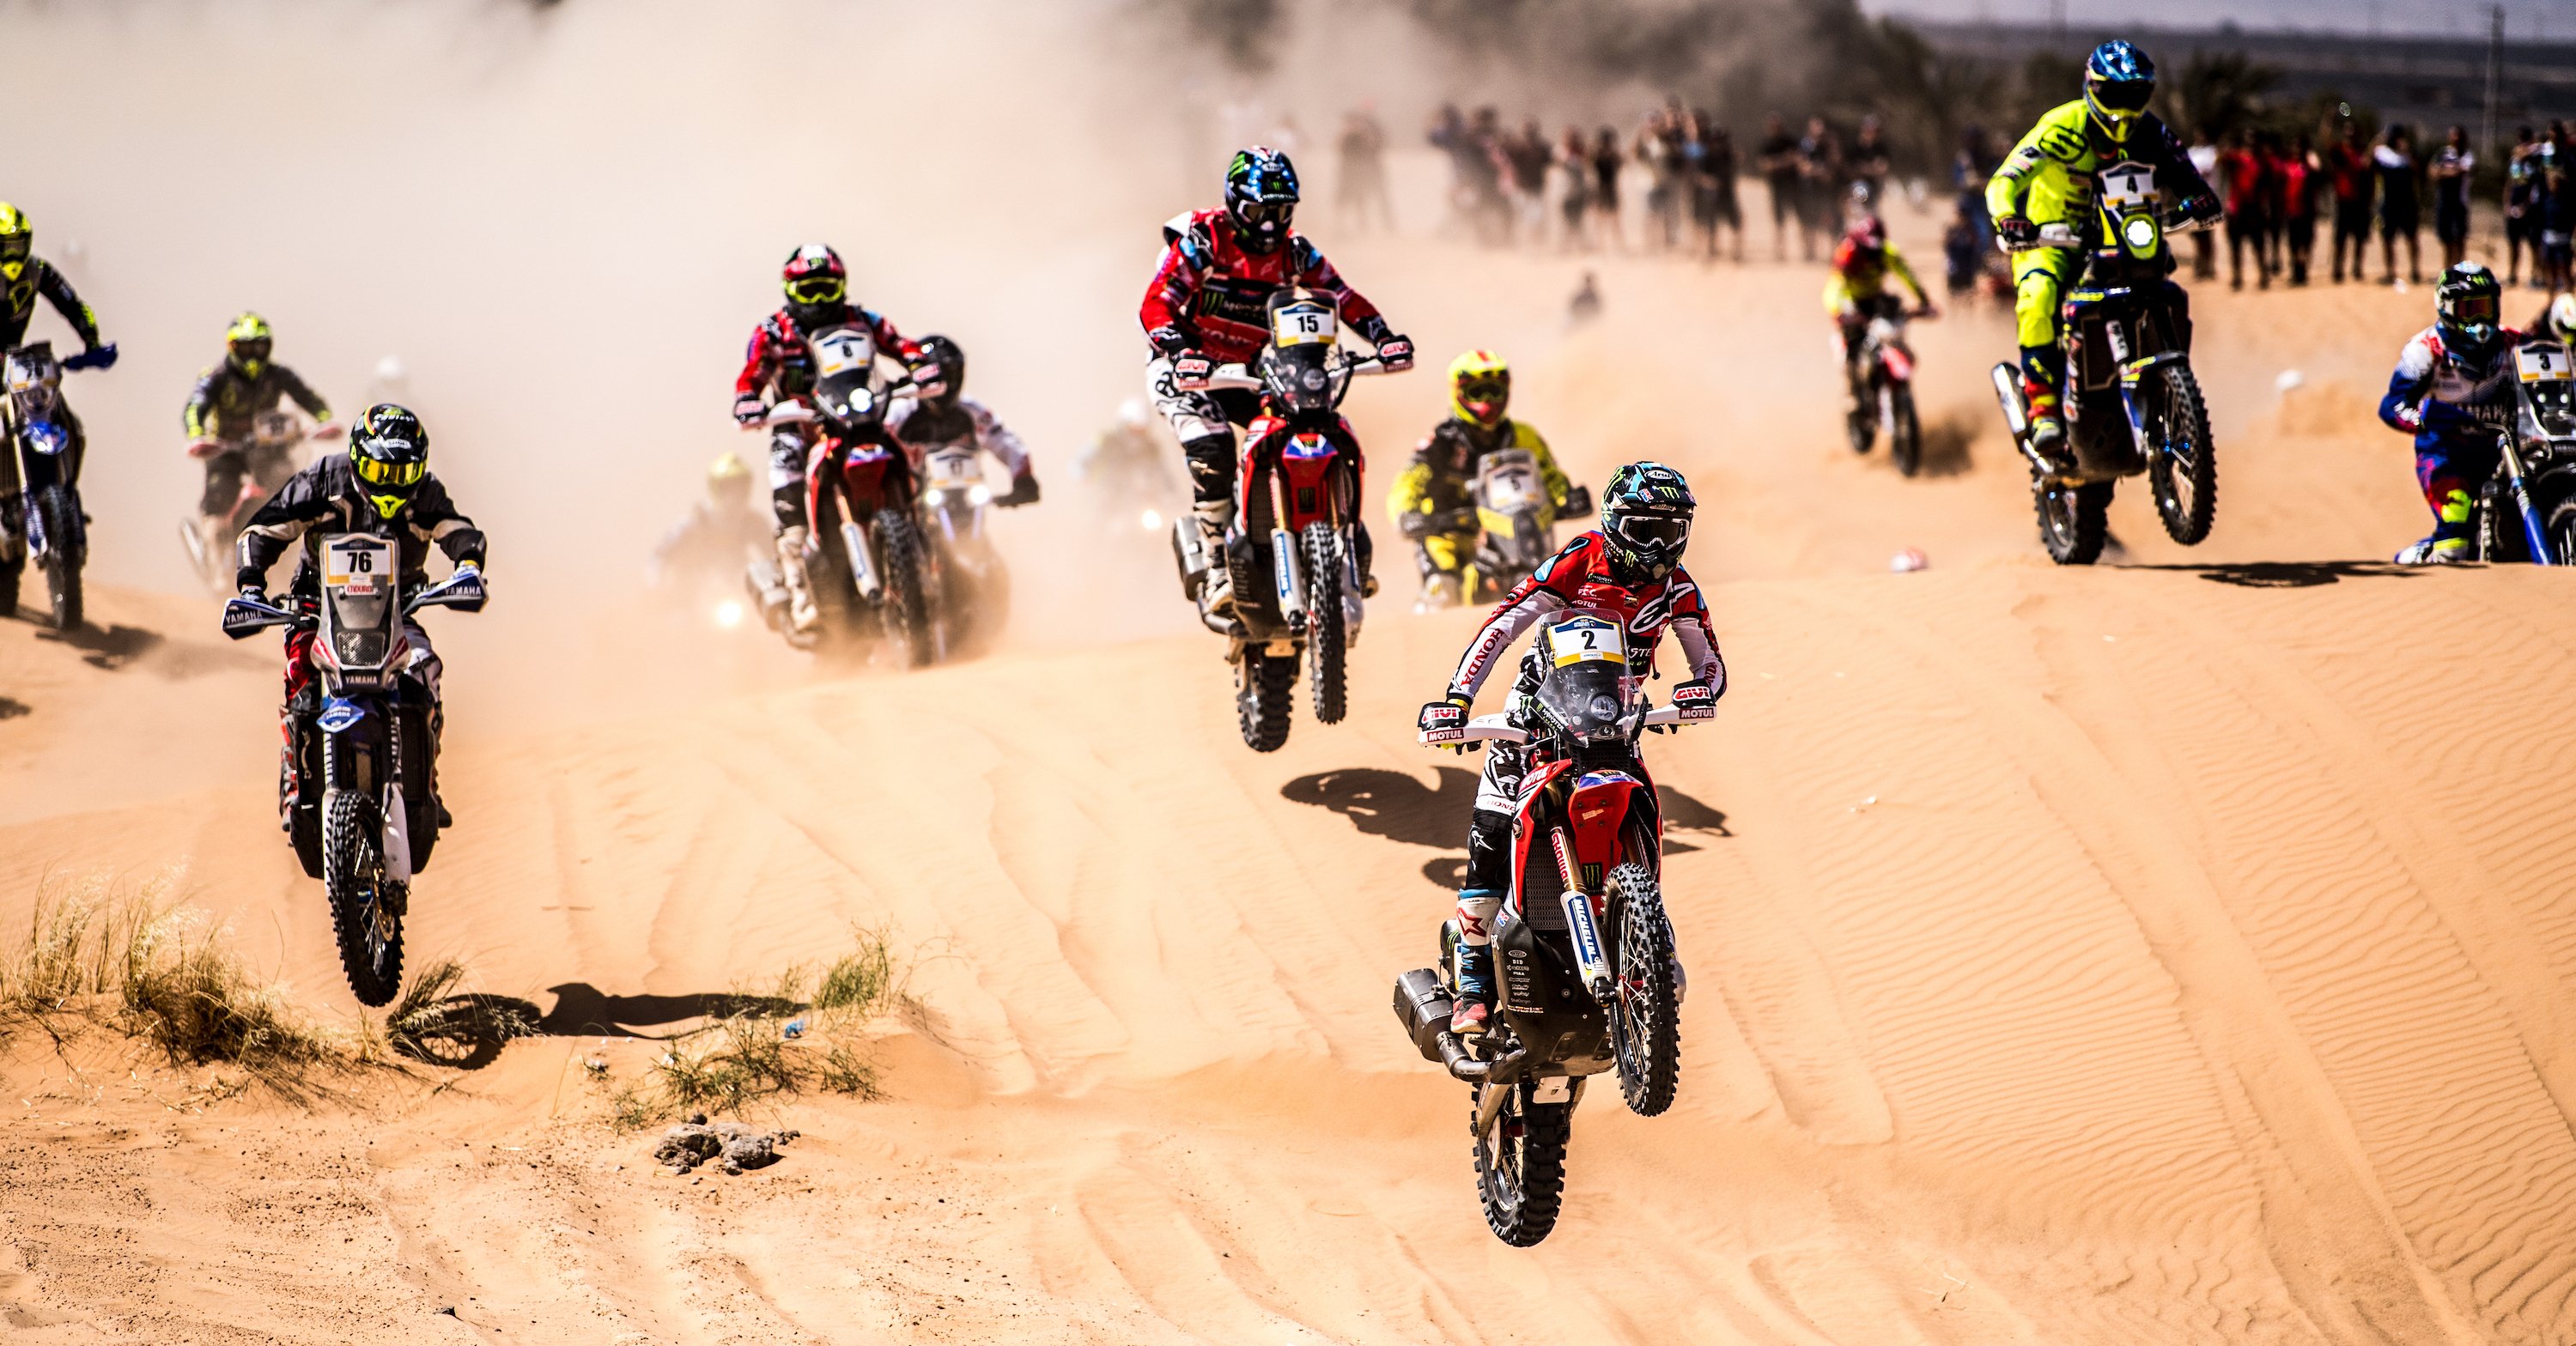 Merzouga Rally 2018. Trionfo di Joan Barreda nella &ldquo;Mini-Dakar&rdquo; in Marocco!